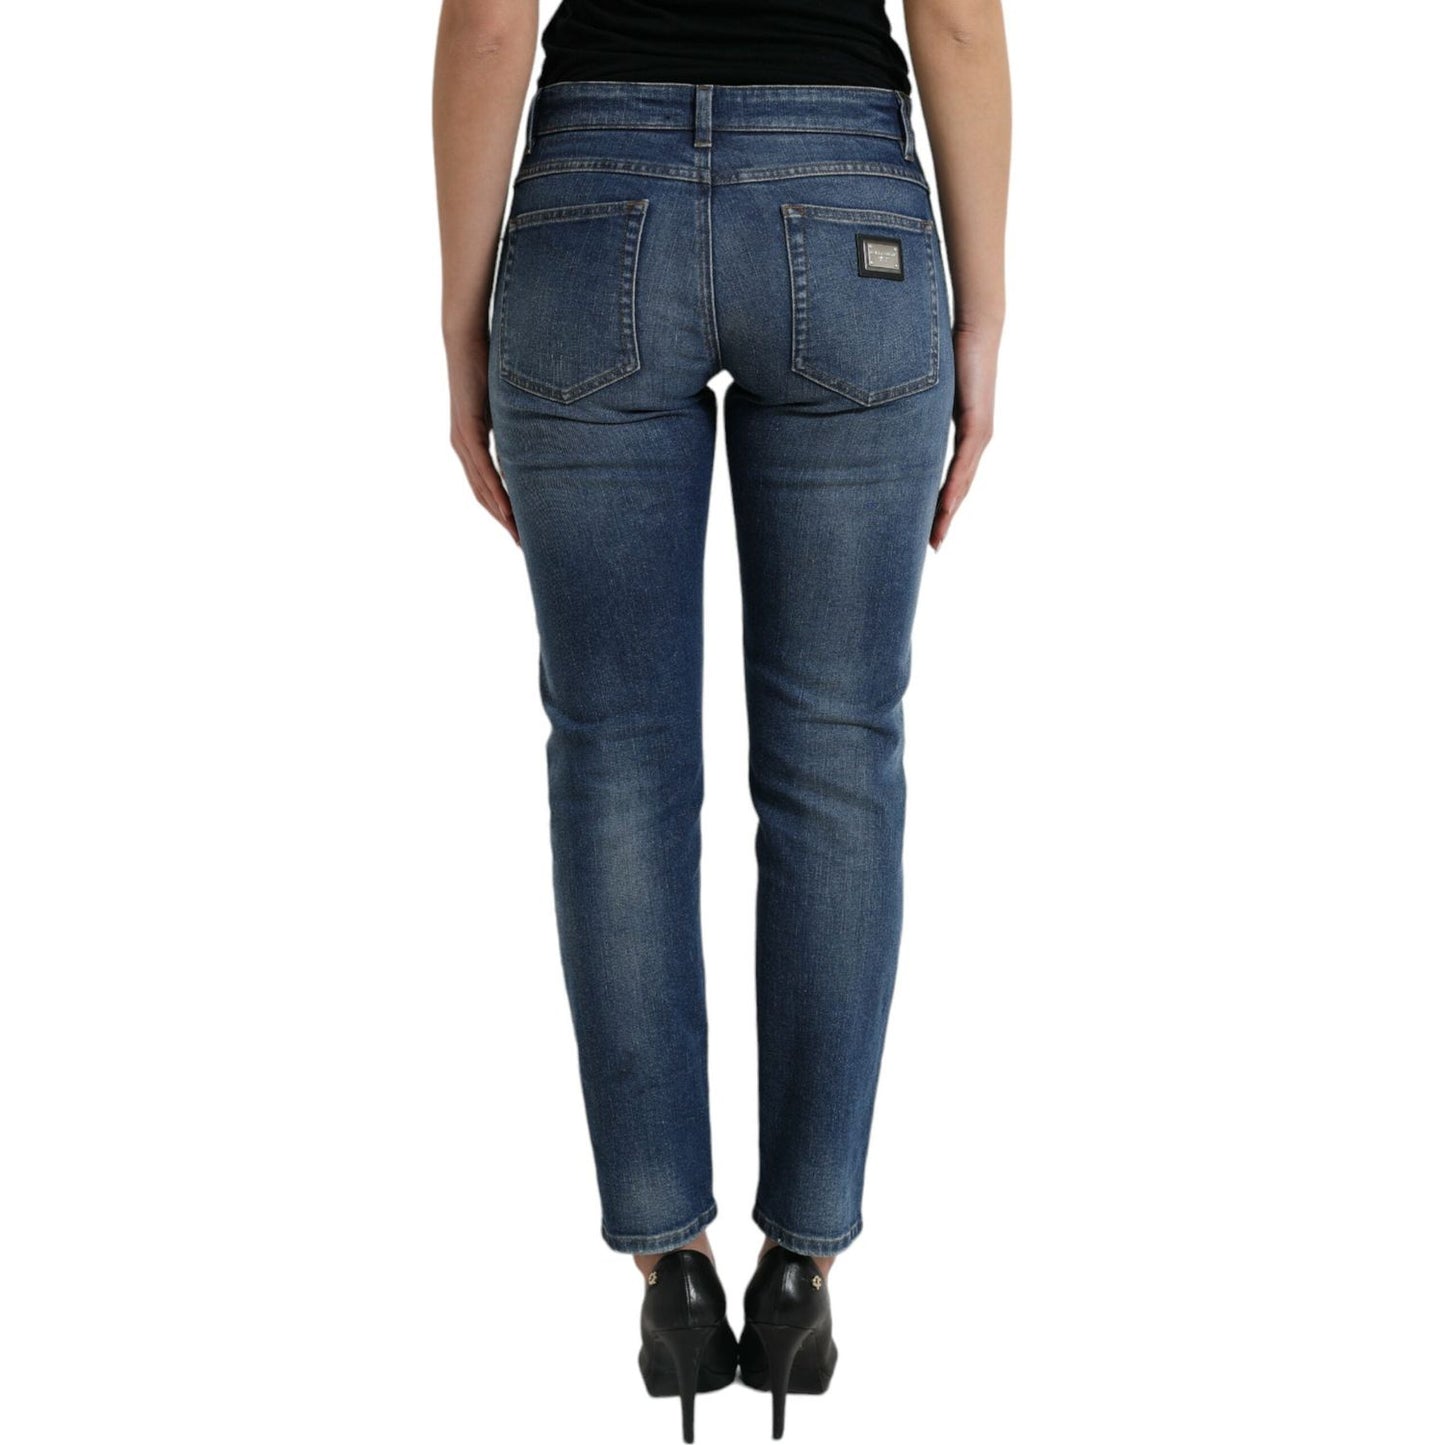 Dolce & Gabbana Chic Boyfriend Mid-Waist Stretch Jeans blue-boyfriend-mid-waist-cotton-denim-jeans